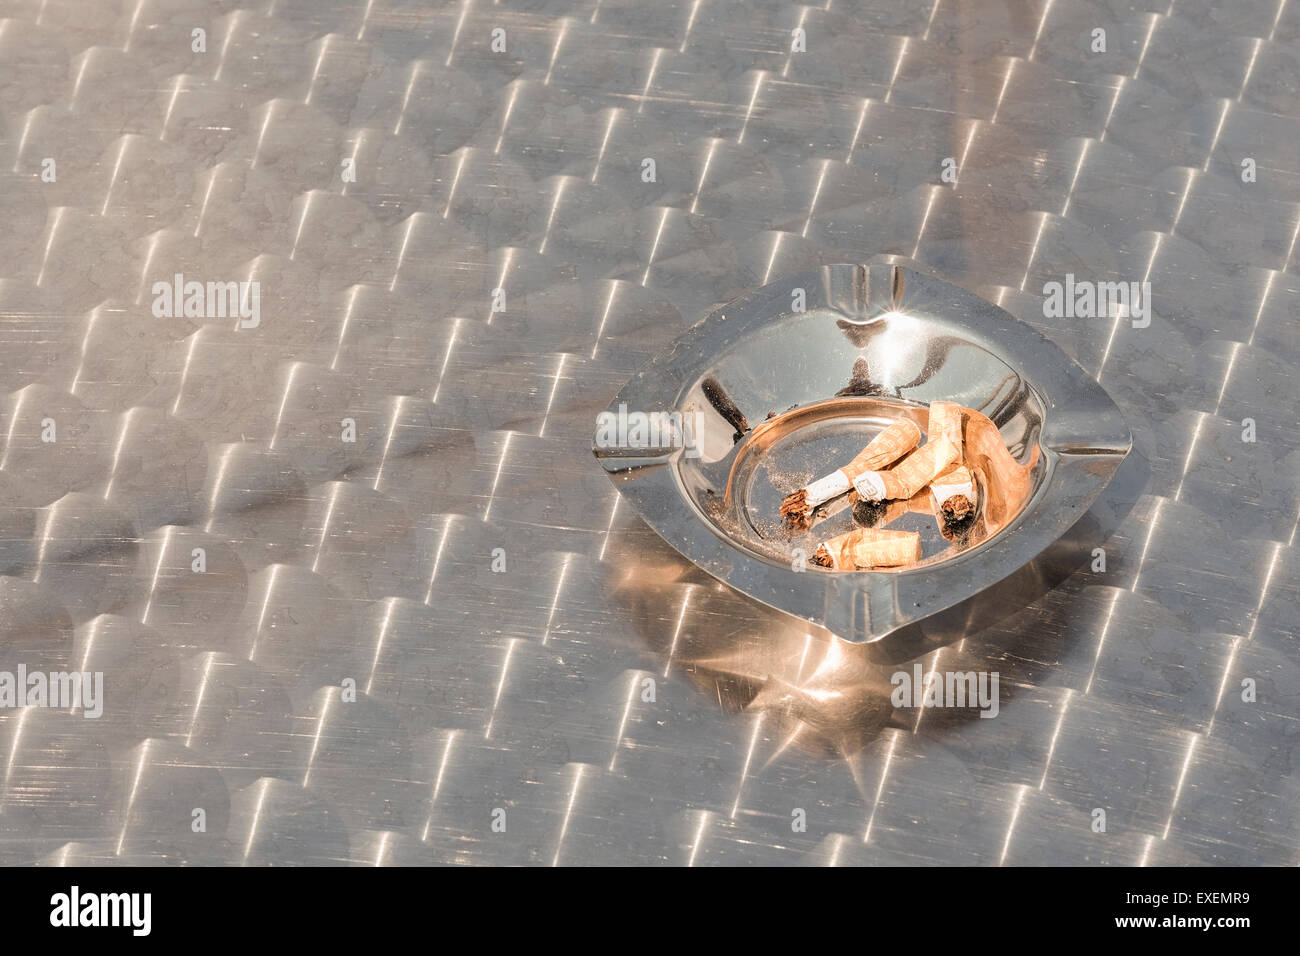 Les cogné mégots de cigarettes filtres dans un cendrier en acier inoxydable à l'extérieur sur une table en métal. Fumeurs concept conceptuel Banque D'Images